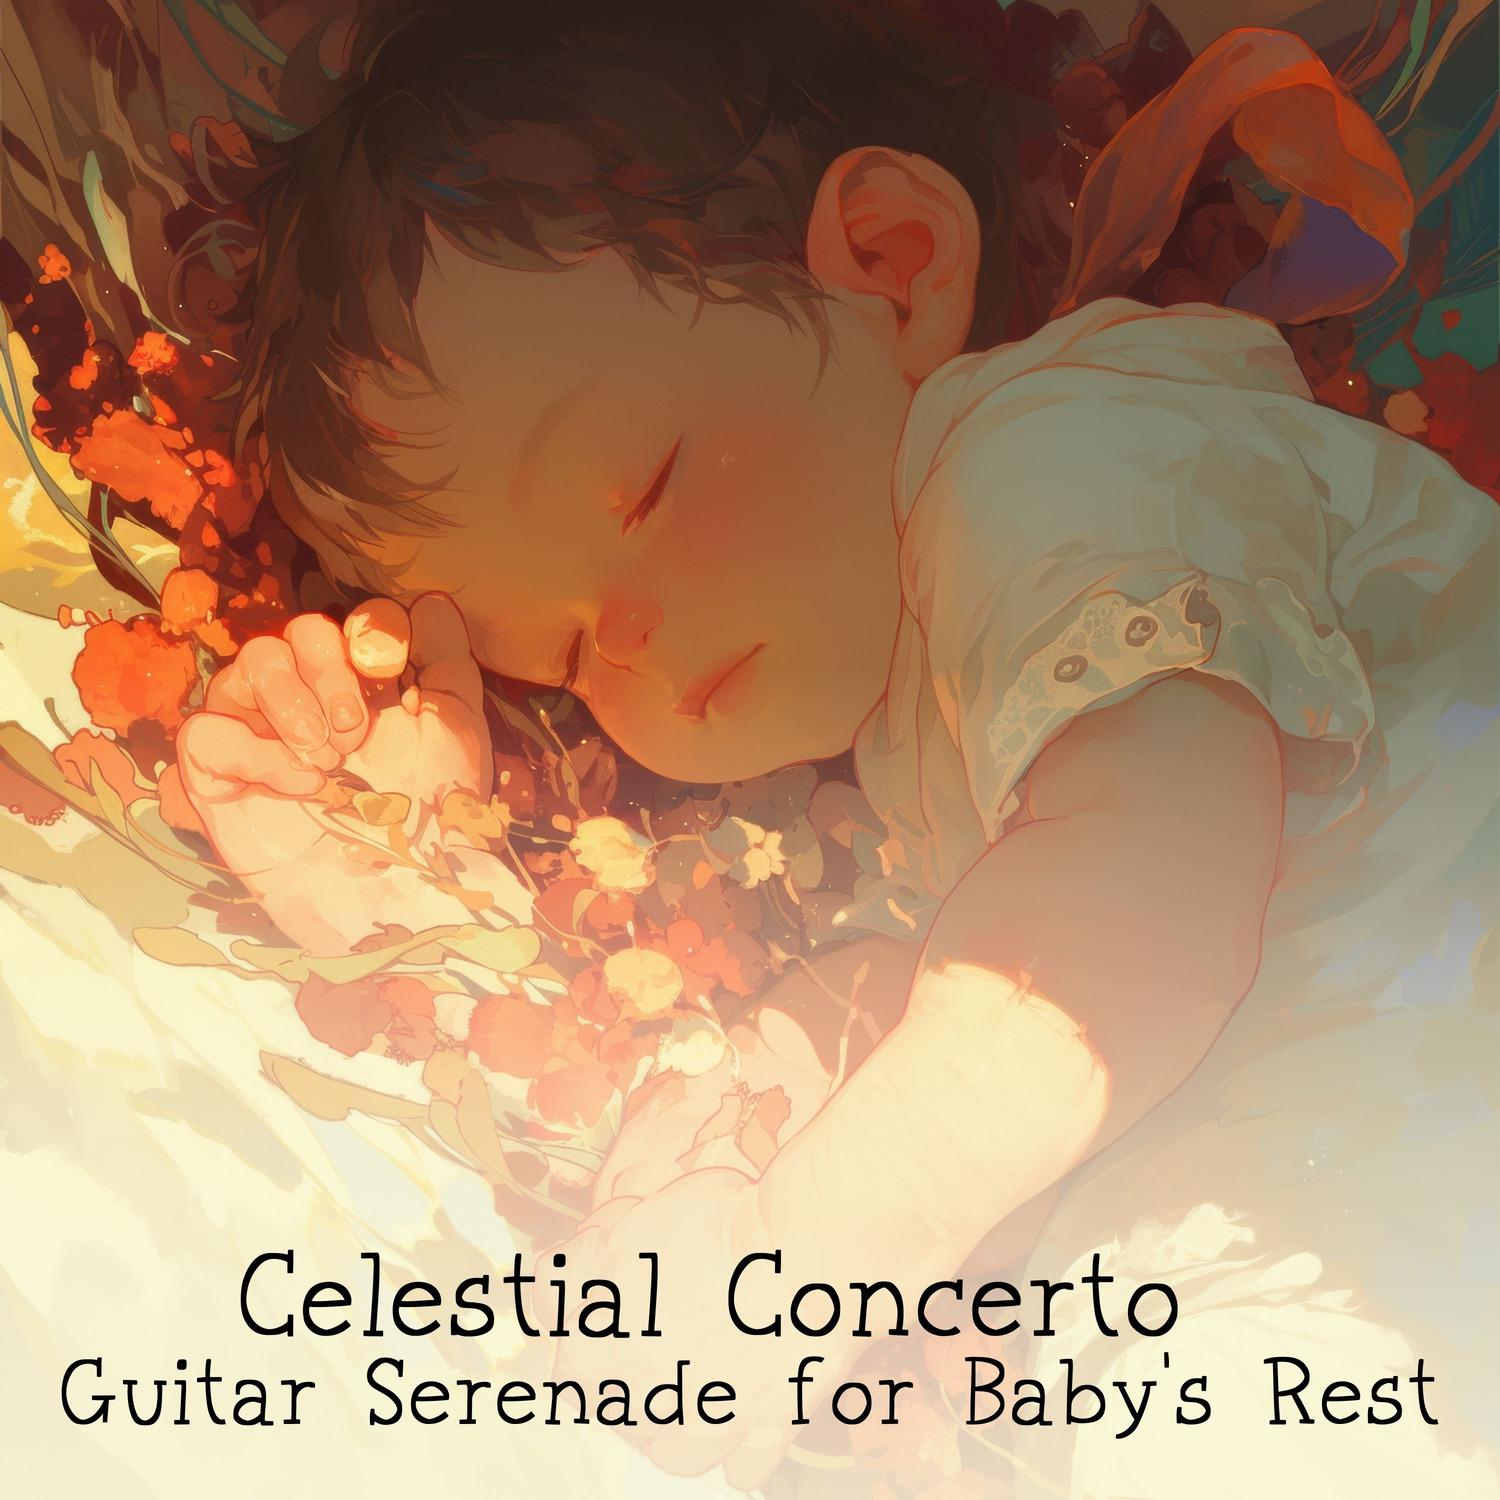 Baby Shushing - Nighttime Giggles Soften in Guitar's Bedtime Sonata